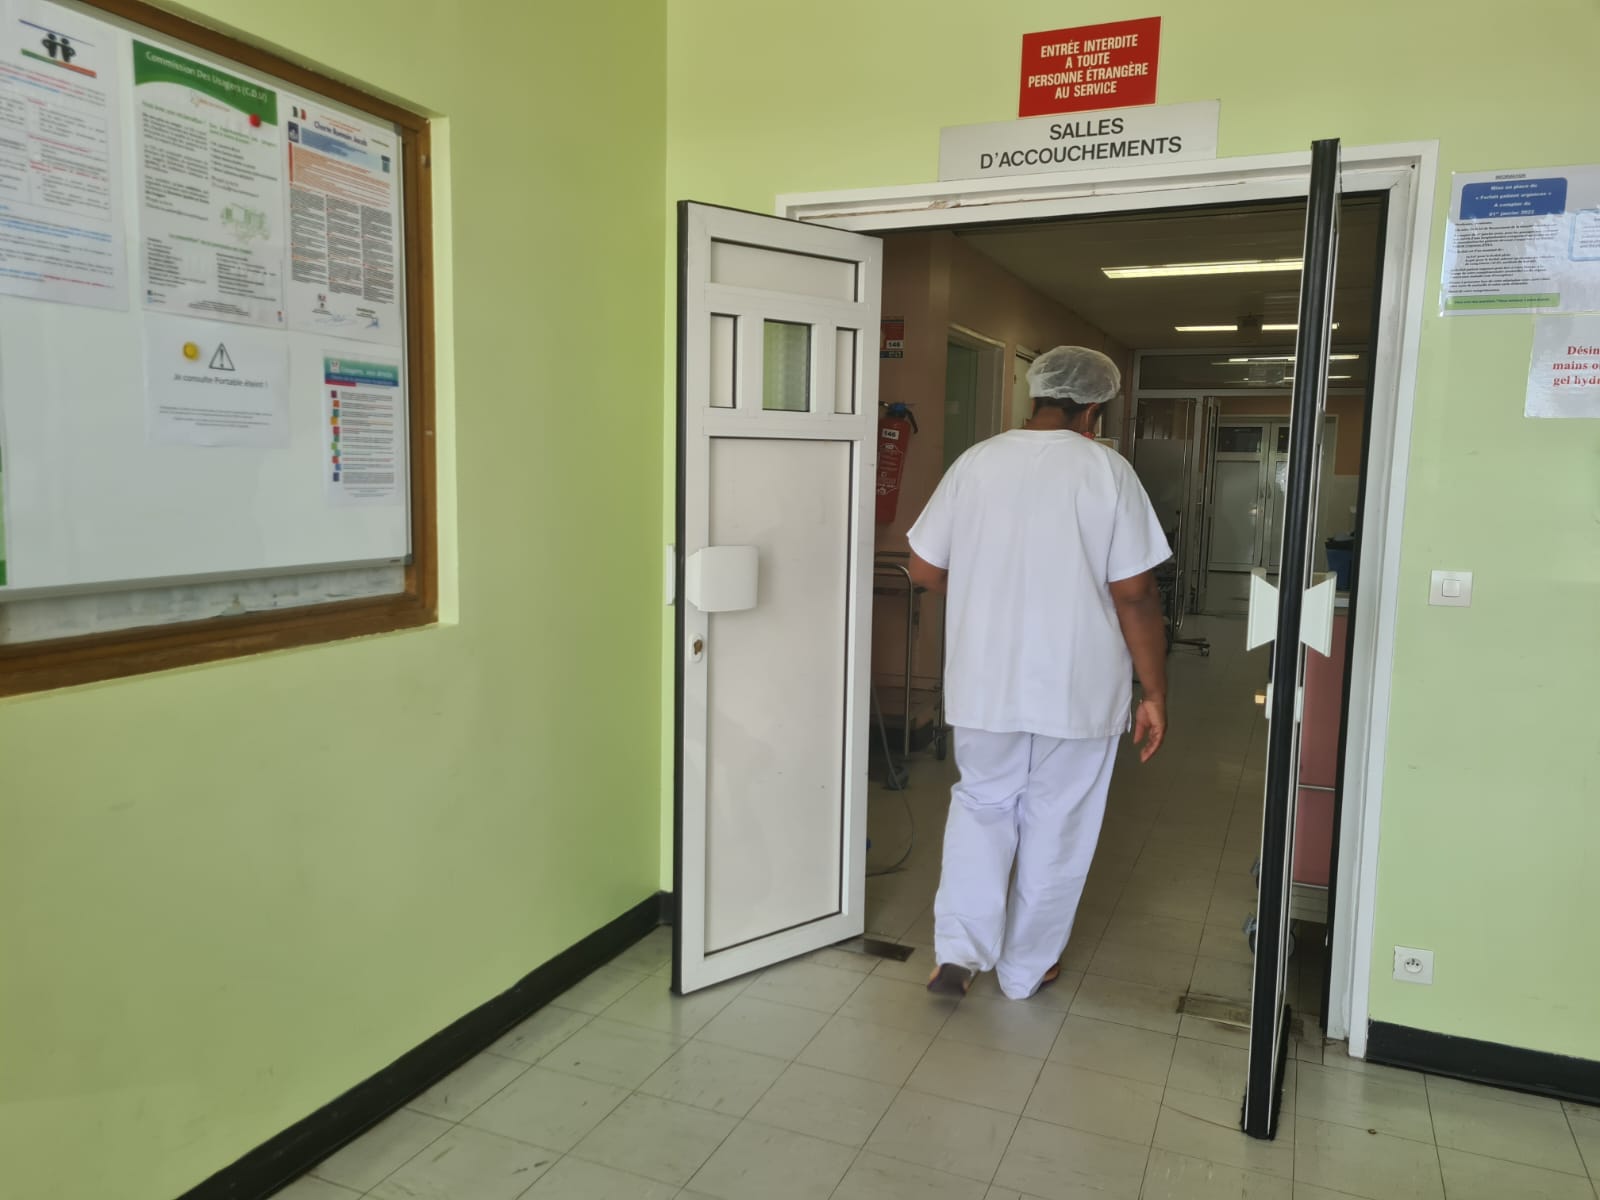     Les salles d’accouchement de l’hôpital de Trinité transférées provisoirement à la MFME

